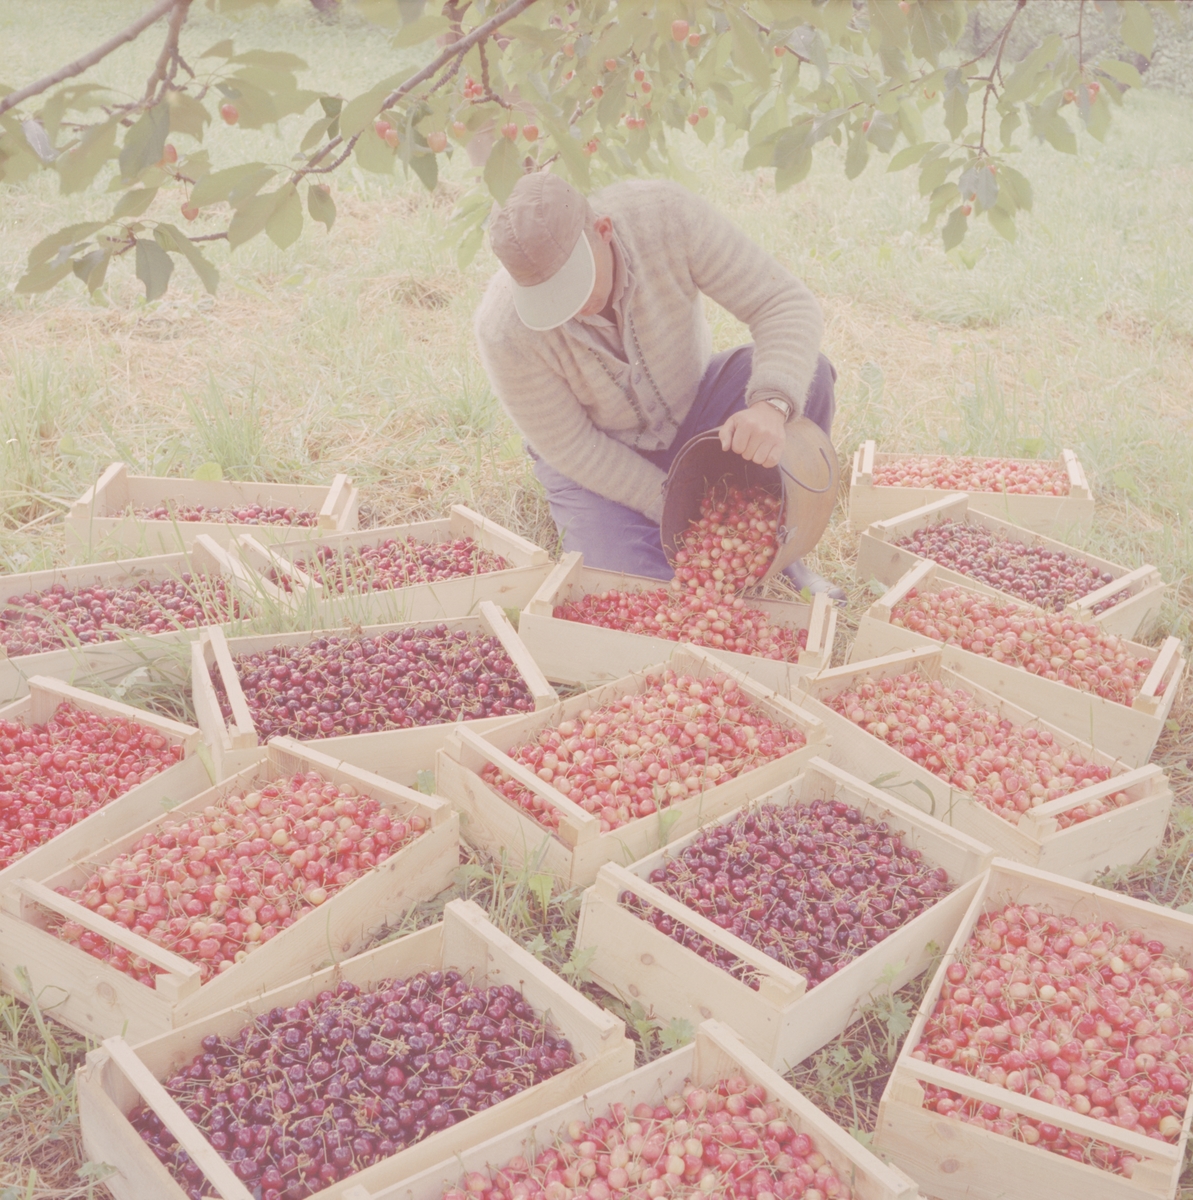 Norsk landbruks jubileumsutstilling 1959. Kasser med nyplukkede bær av alle slag. Bærplukkeren tømmer spannet.